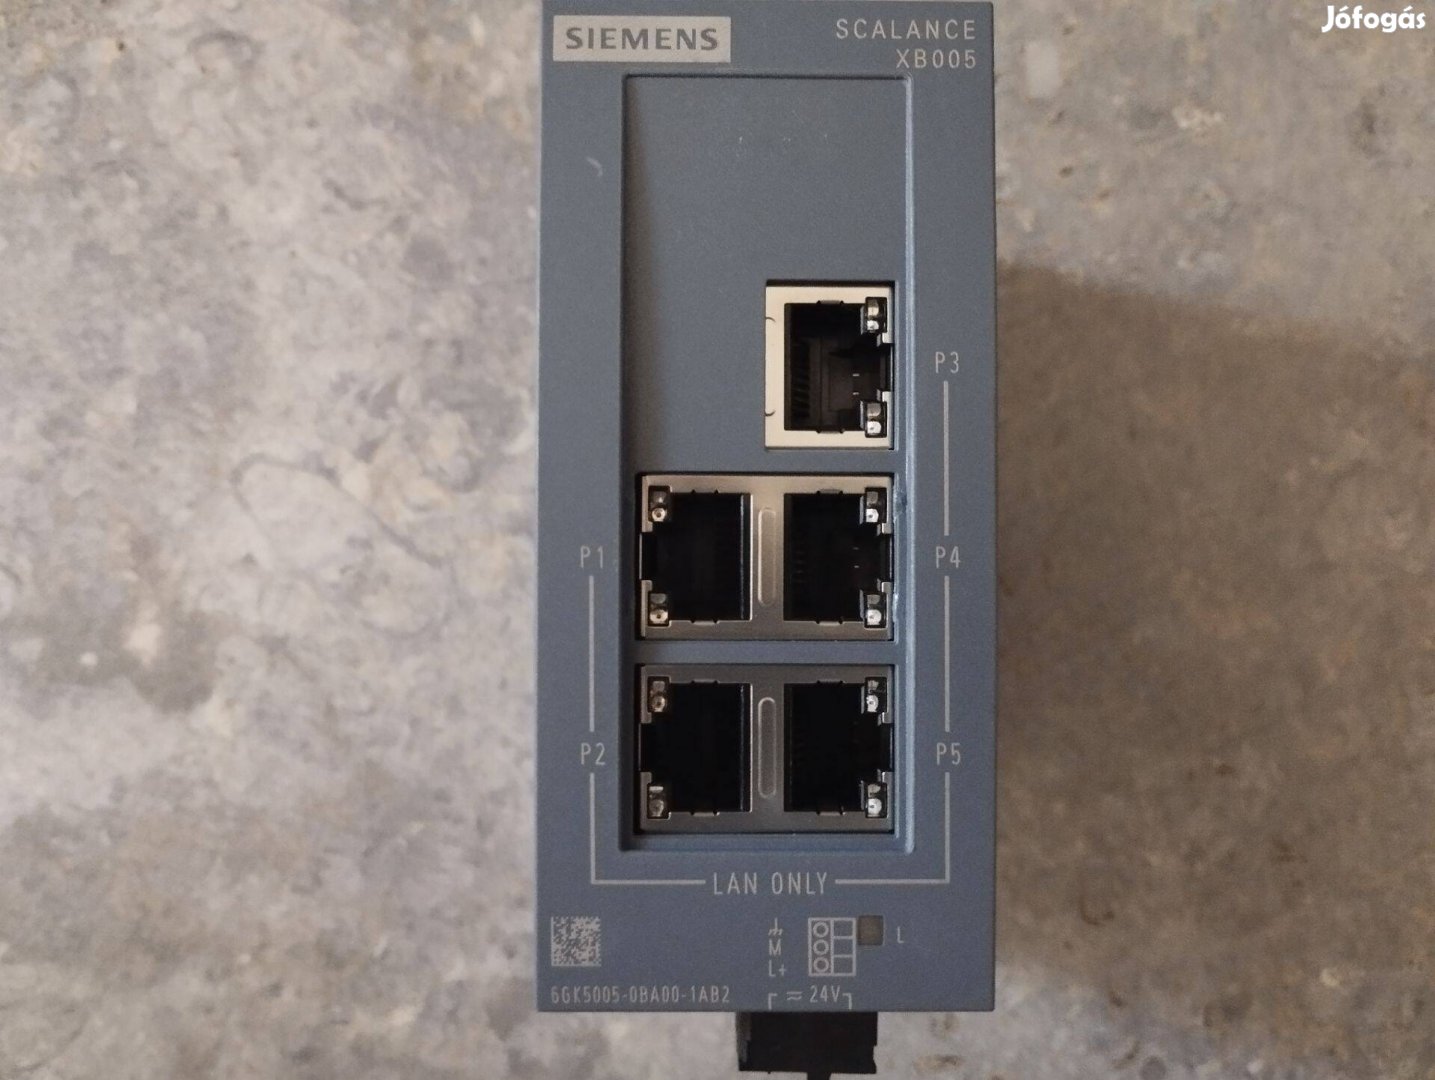 Siemens Scalance XB005 Ethernet switch